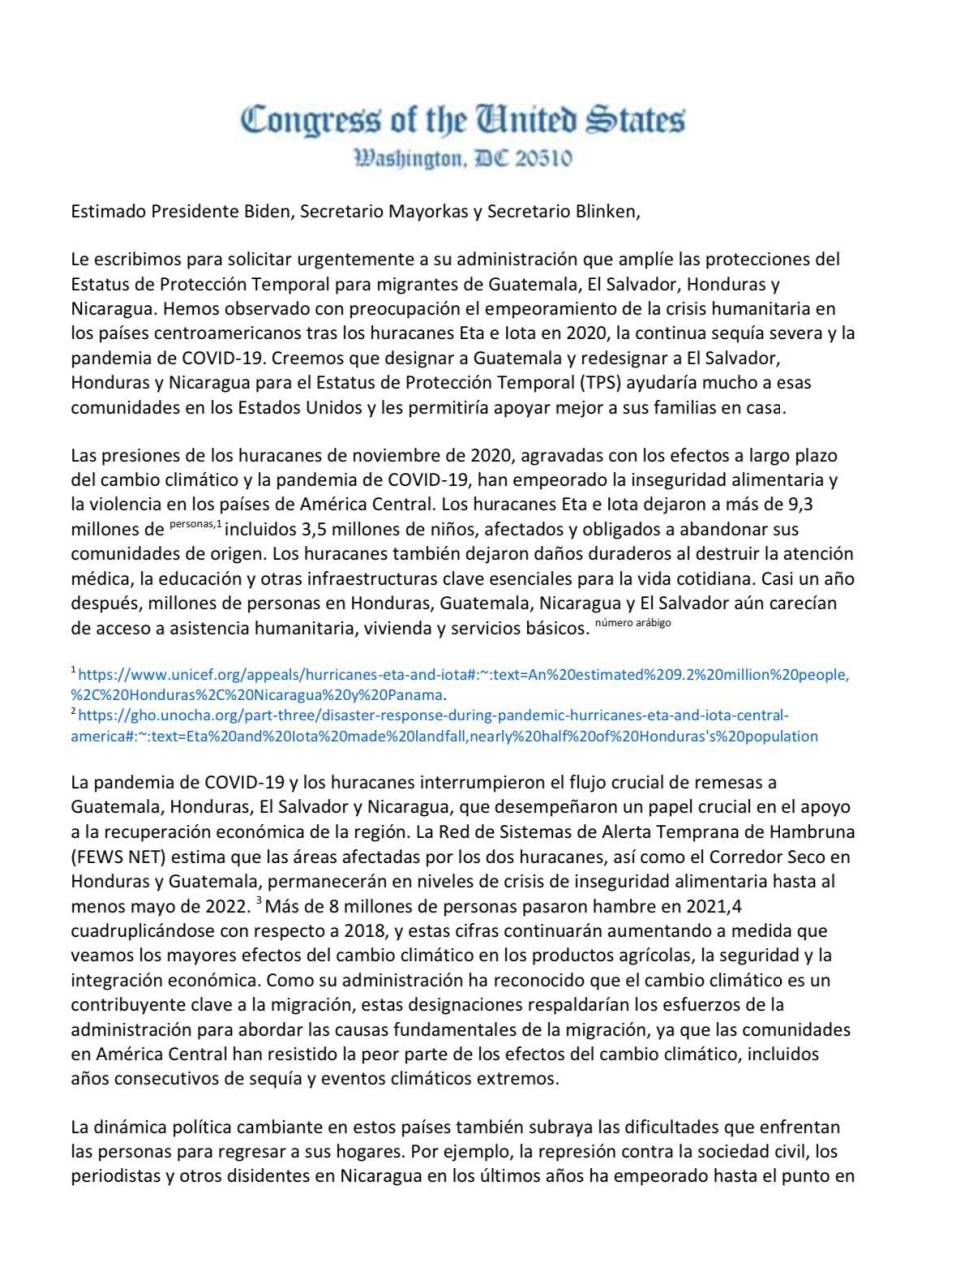 Honduras agradece a congresistas de EEUU por respaldar petición de ampliación de TPS